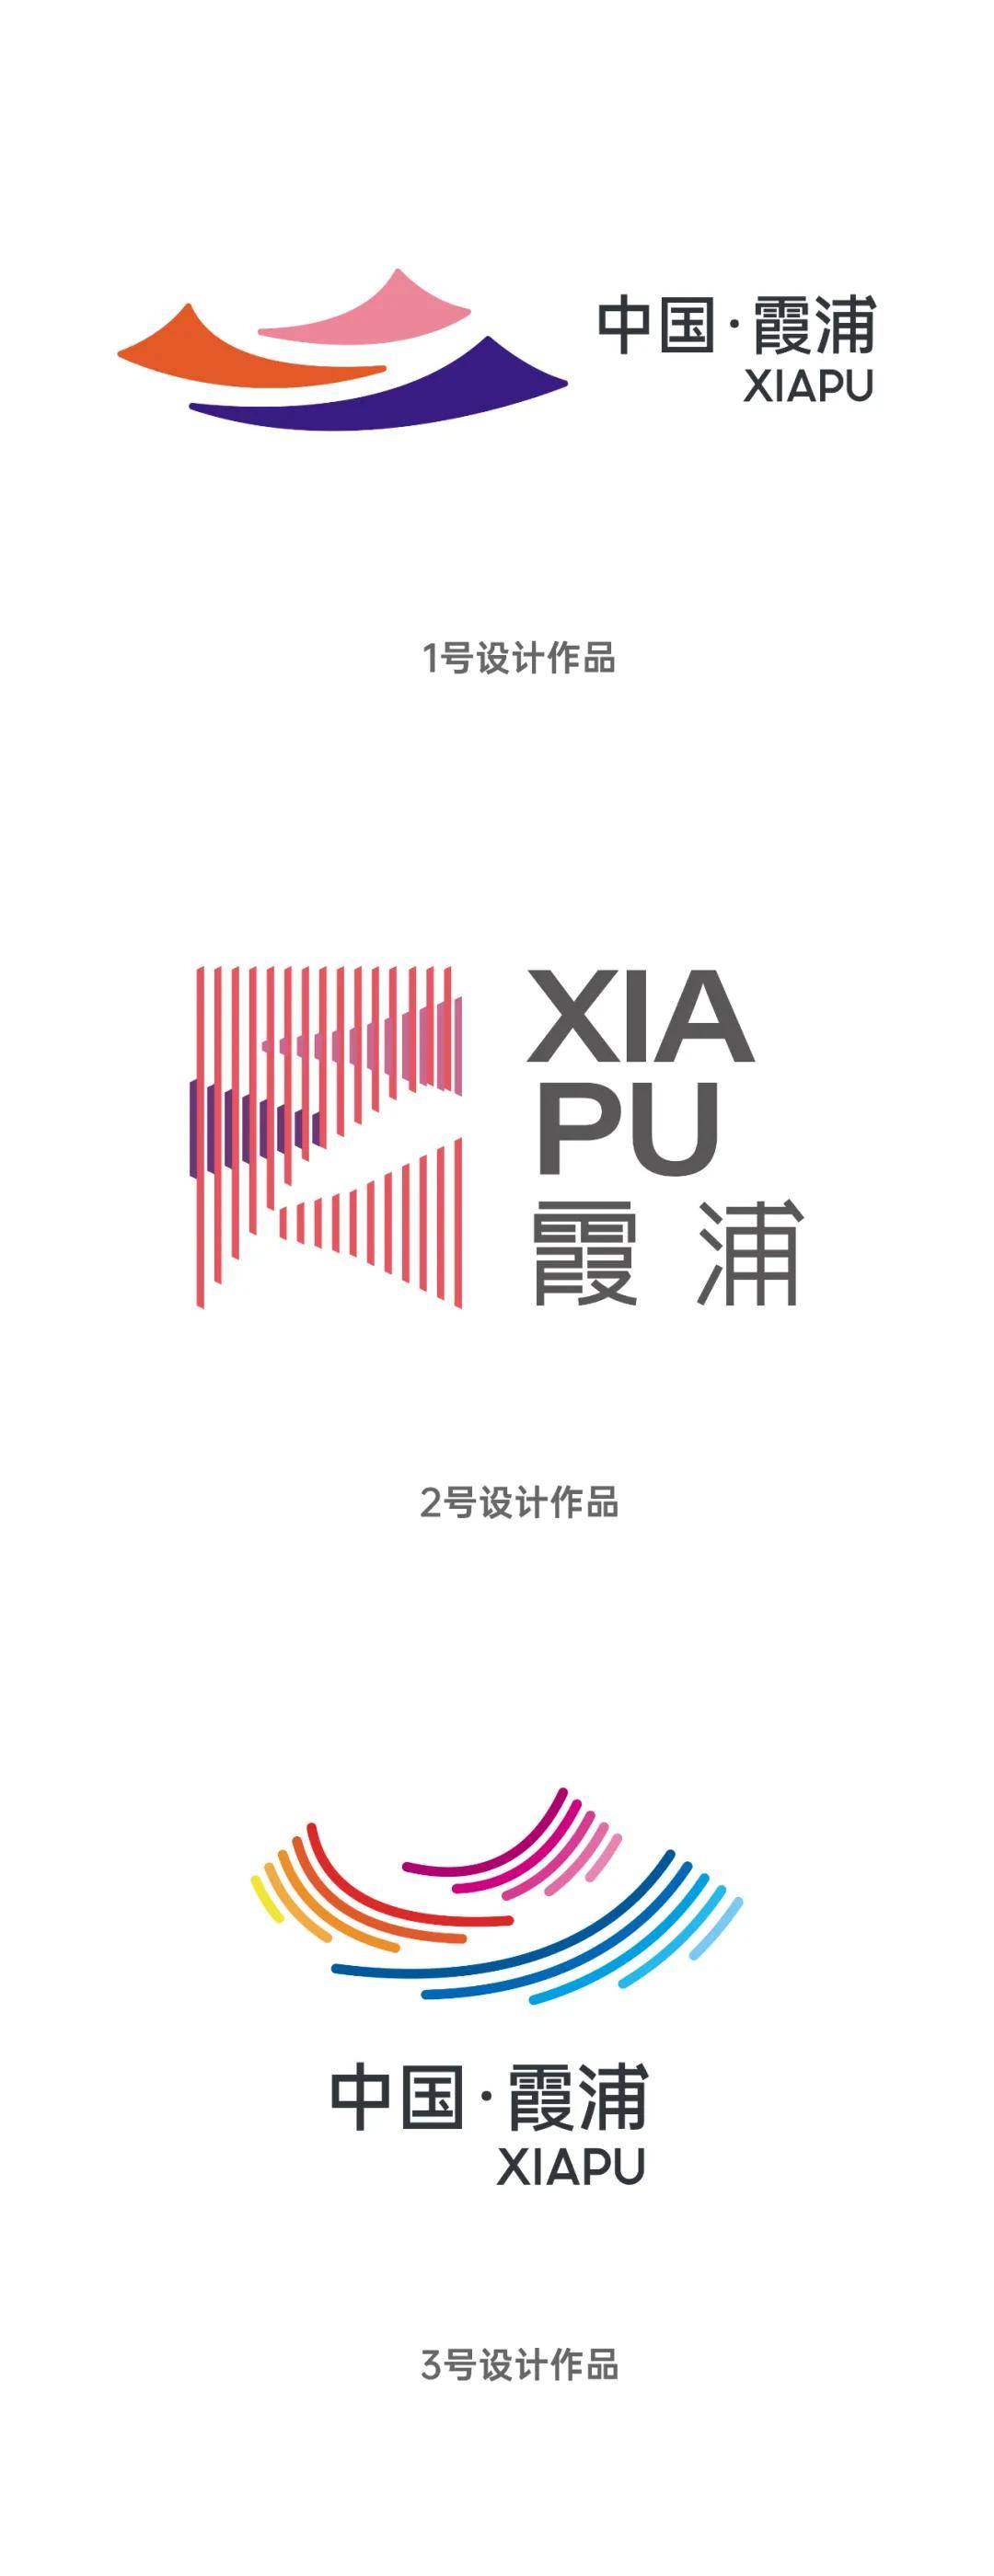 拿起手机,赞出最美的海,霞浦城市旅游品牌logo网络投票开始啦!